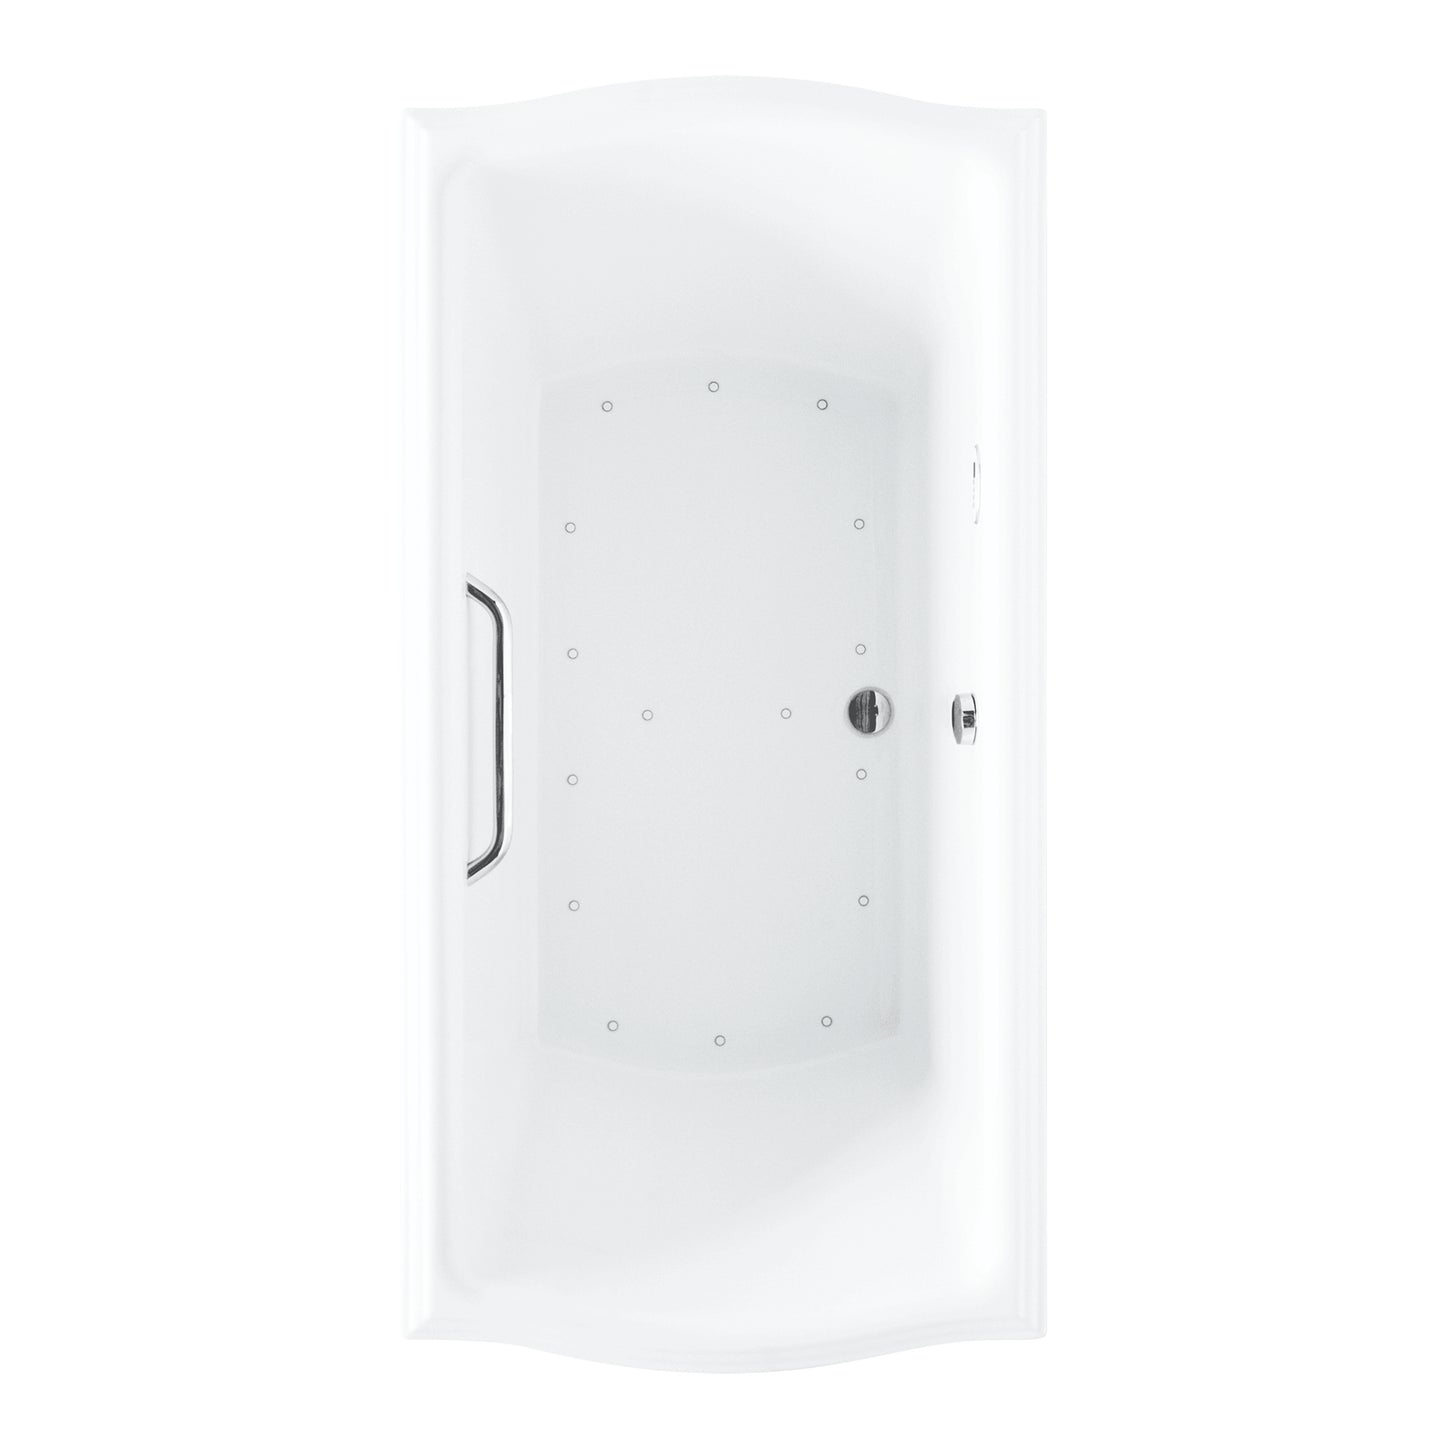 TOTO CLAYTON® Air Bath Acrylic Bathtub with Grab Bar 66" X 36" X 24-3/4" (R Blower) - ABR789S#01YCP